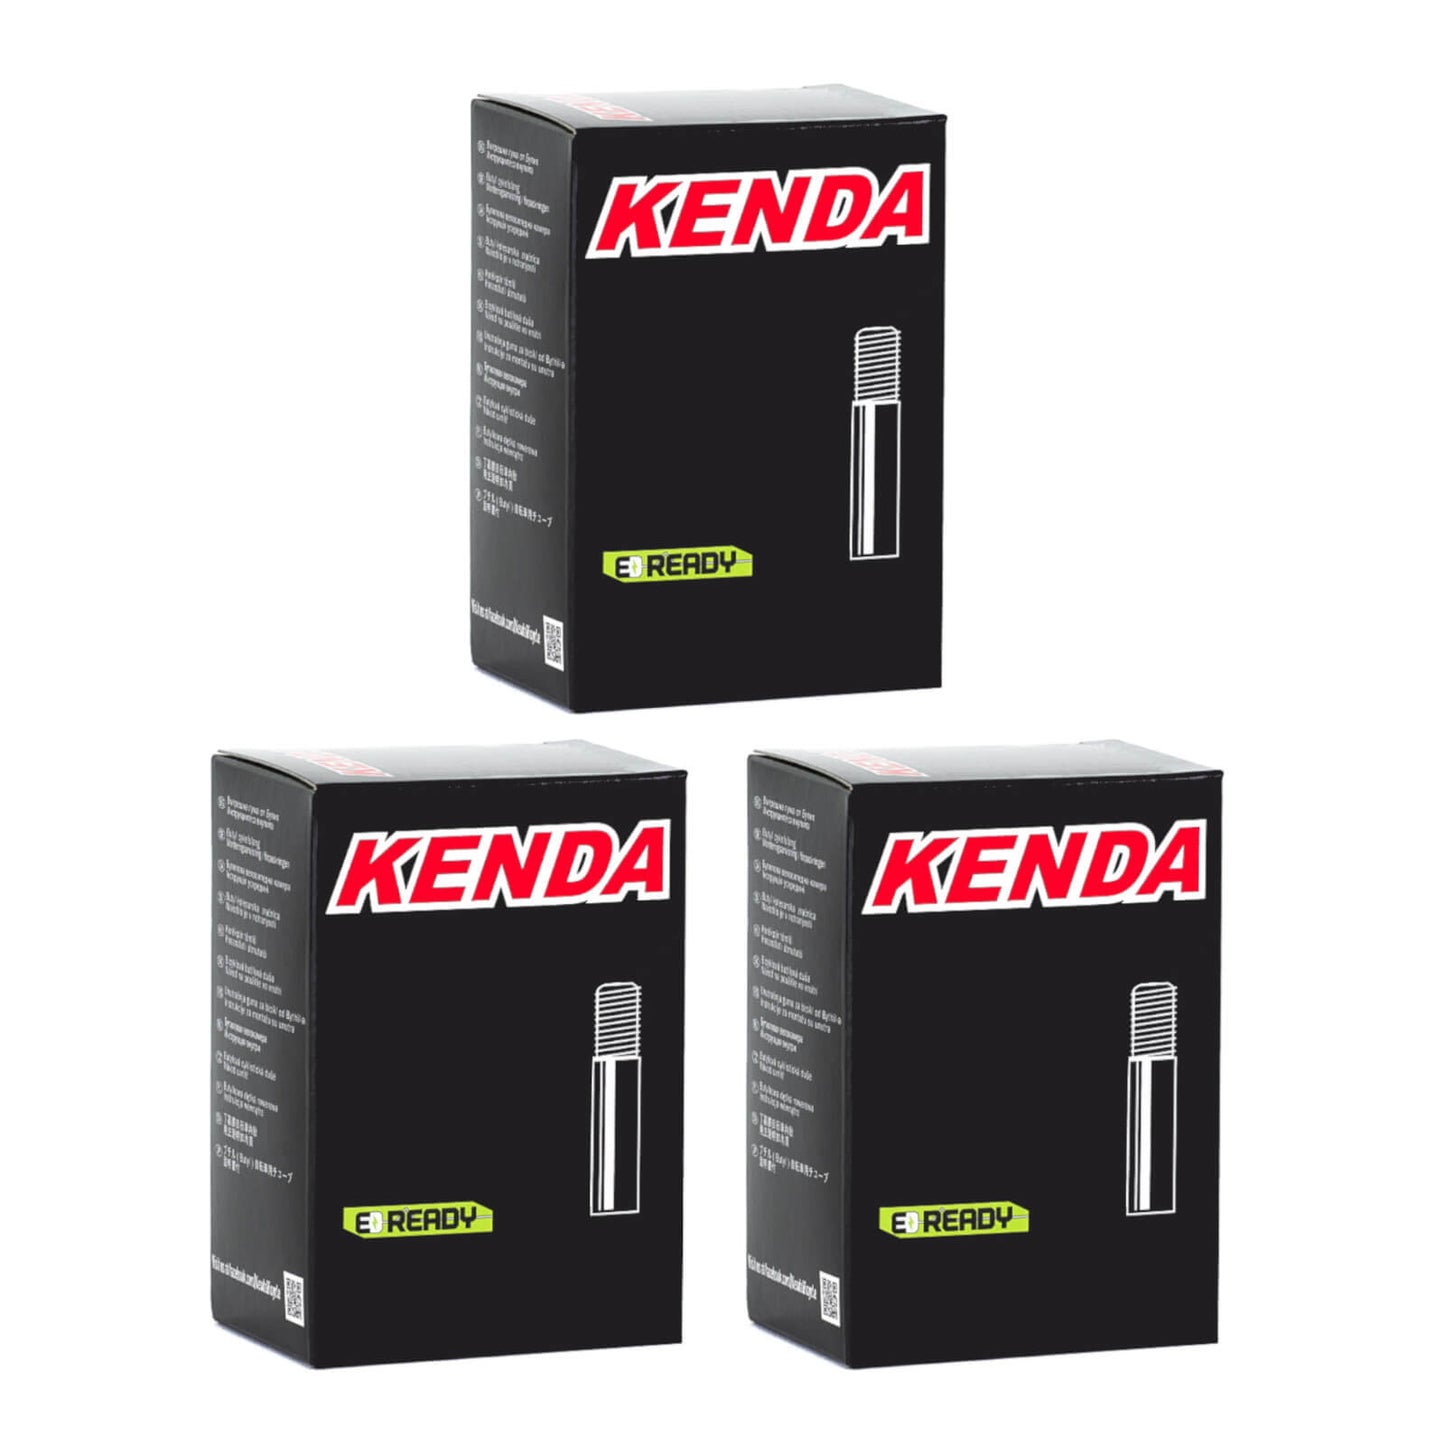 Kenda 27.5x1.9-2.125" 27.5 Inch Schrader Valve Bike Inner Tube Pack of 3